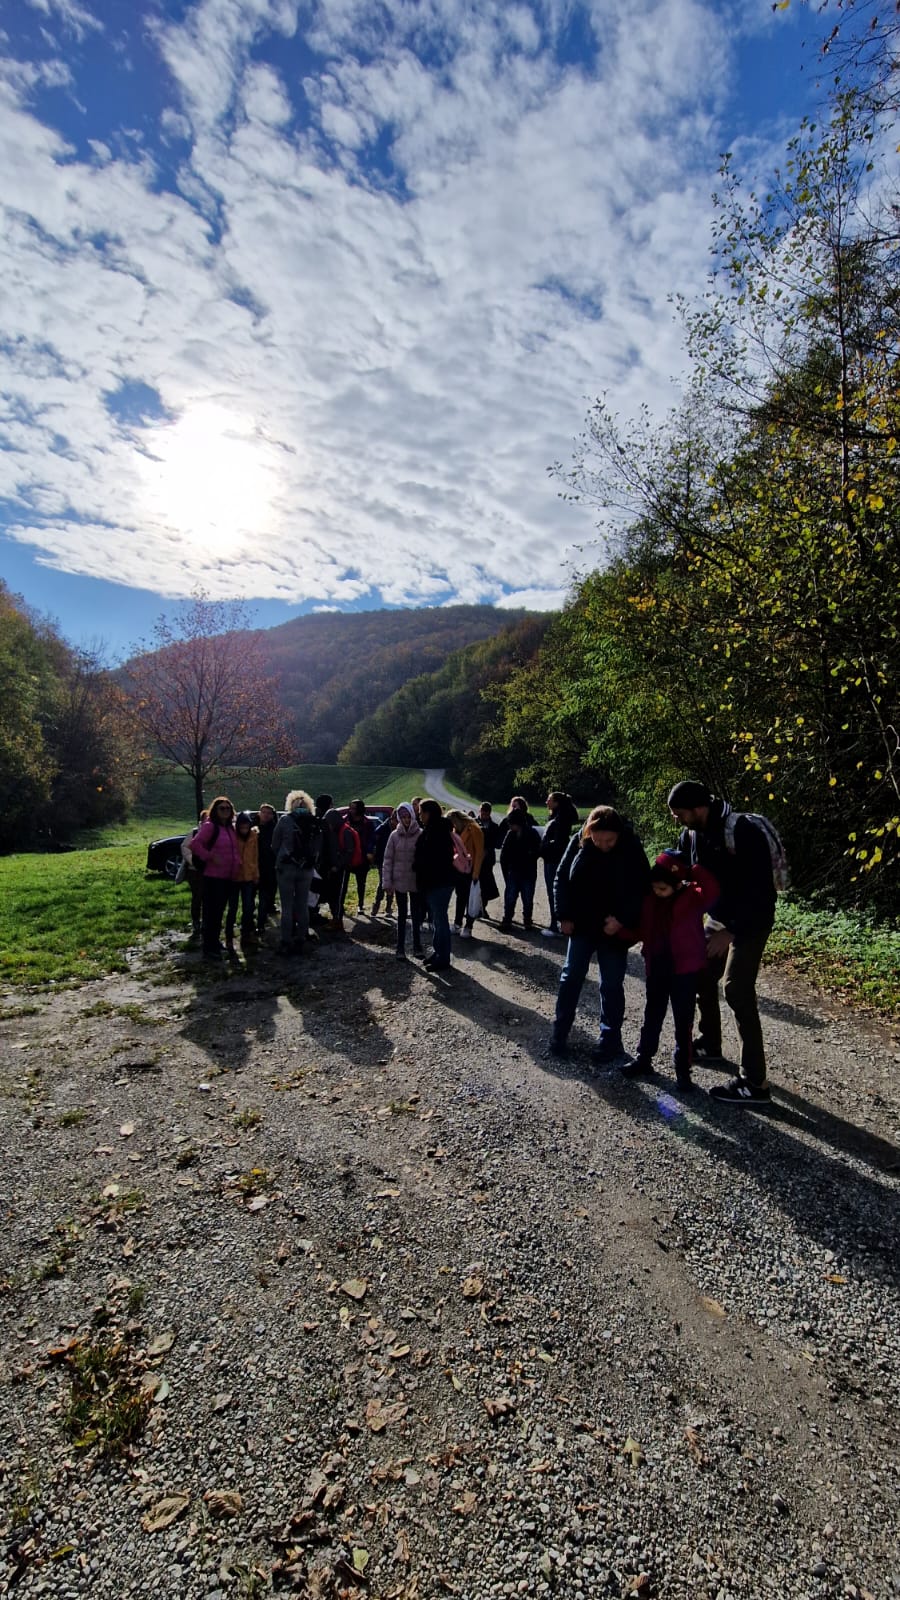 Učenici na početku šetnje prema Gorskom zrcalu